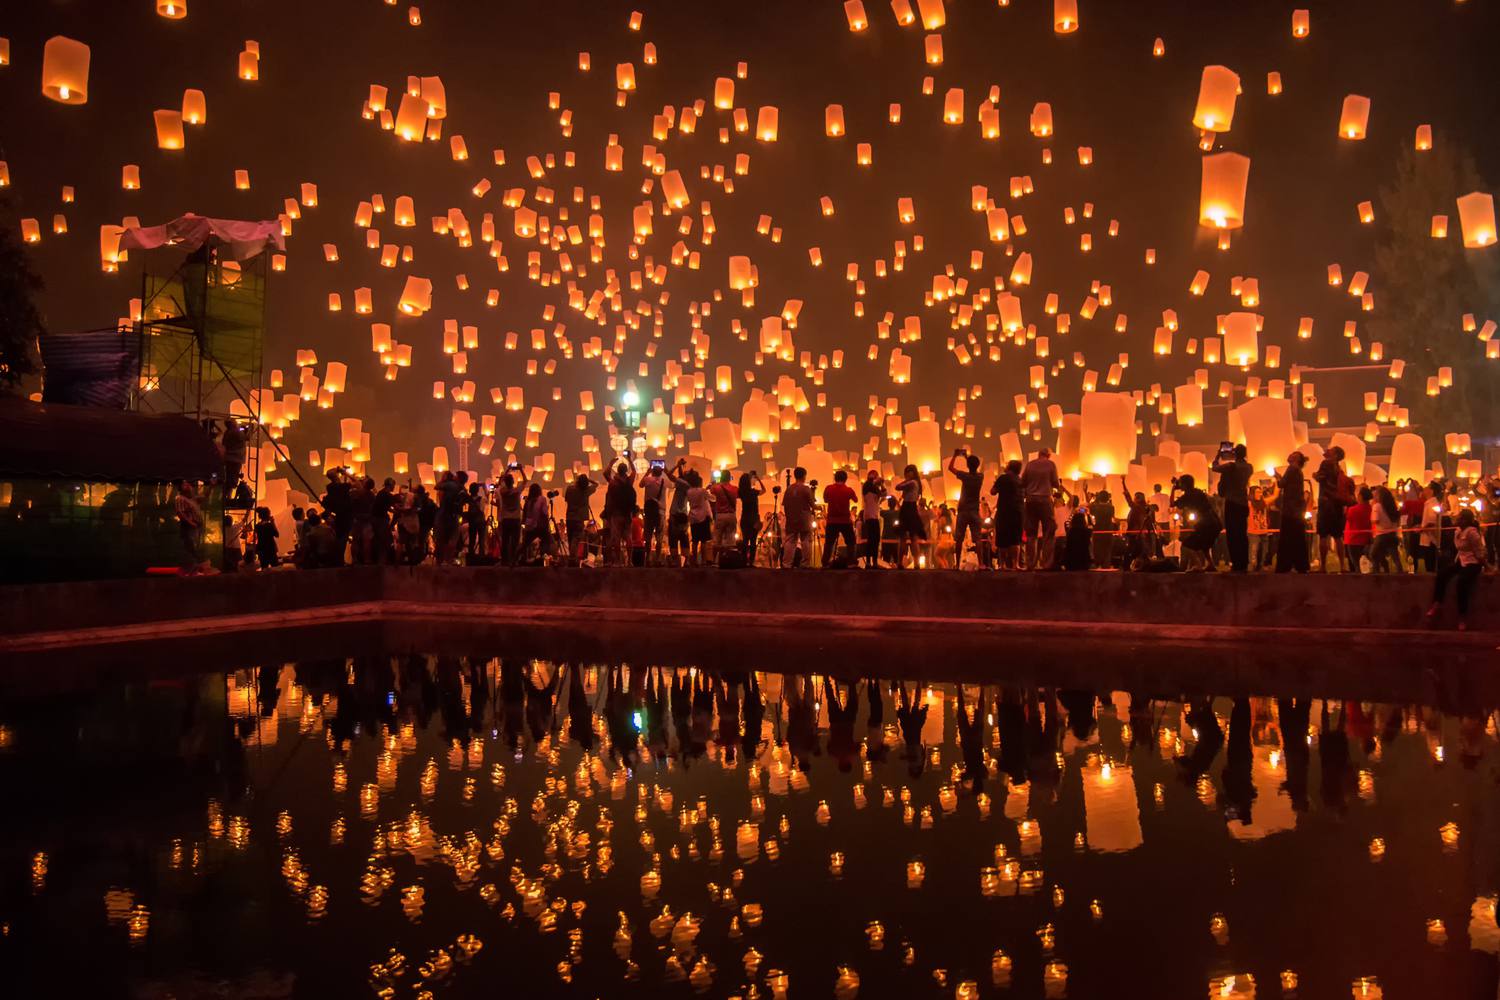 コムローイとは 無数の灯りが夜空に放たれる幻想的なお祭りが見たい 海外旅行 日本国内旅行のおすすめ情報 Veltra Zine ベルトラ